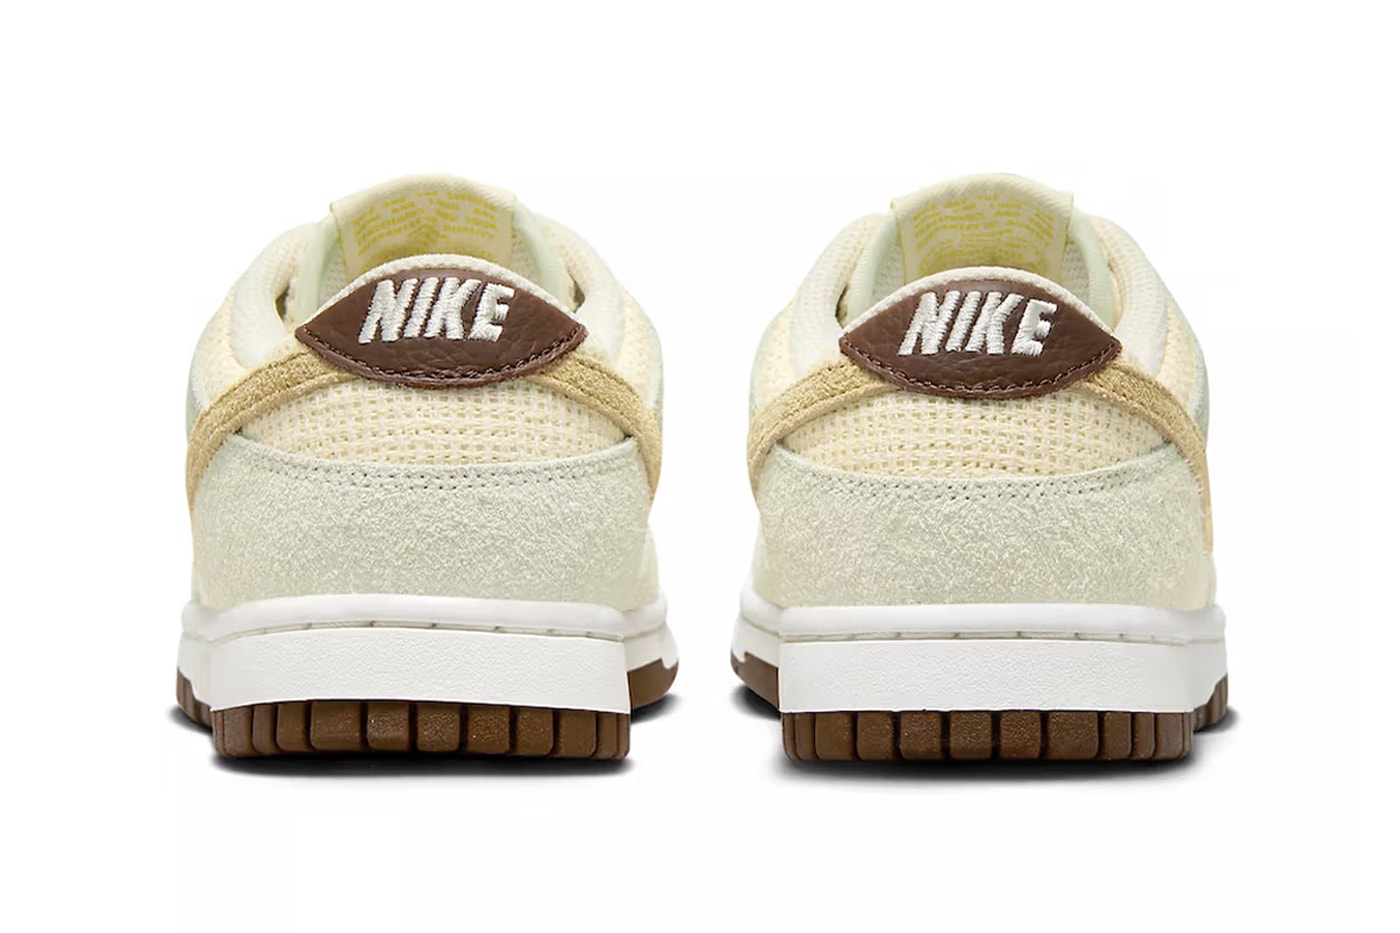 Nike Dunk Low Hemp Suede FN7774-001 Release Info